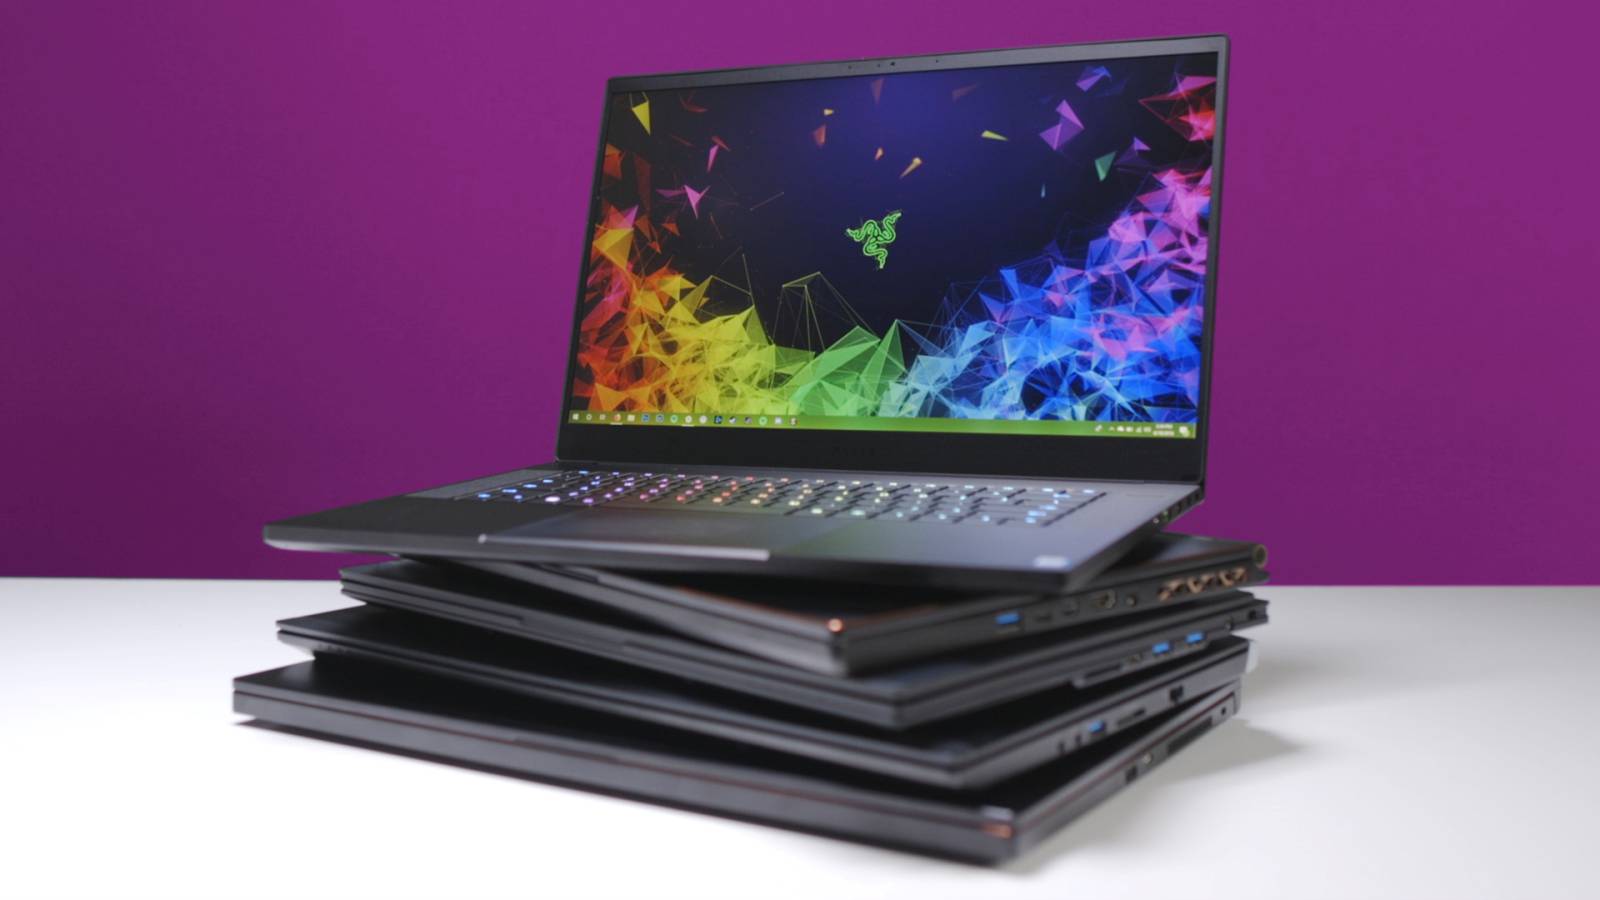 Laptop eMAG ZNIŻKI 2.000 LEI TANIE modele